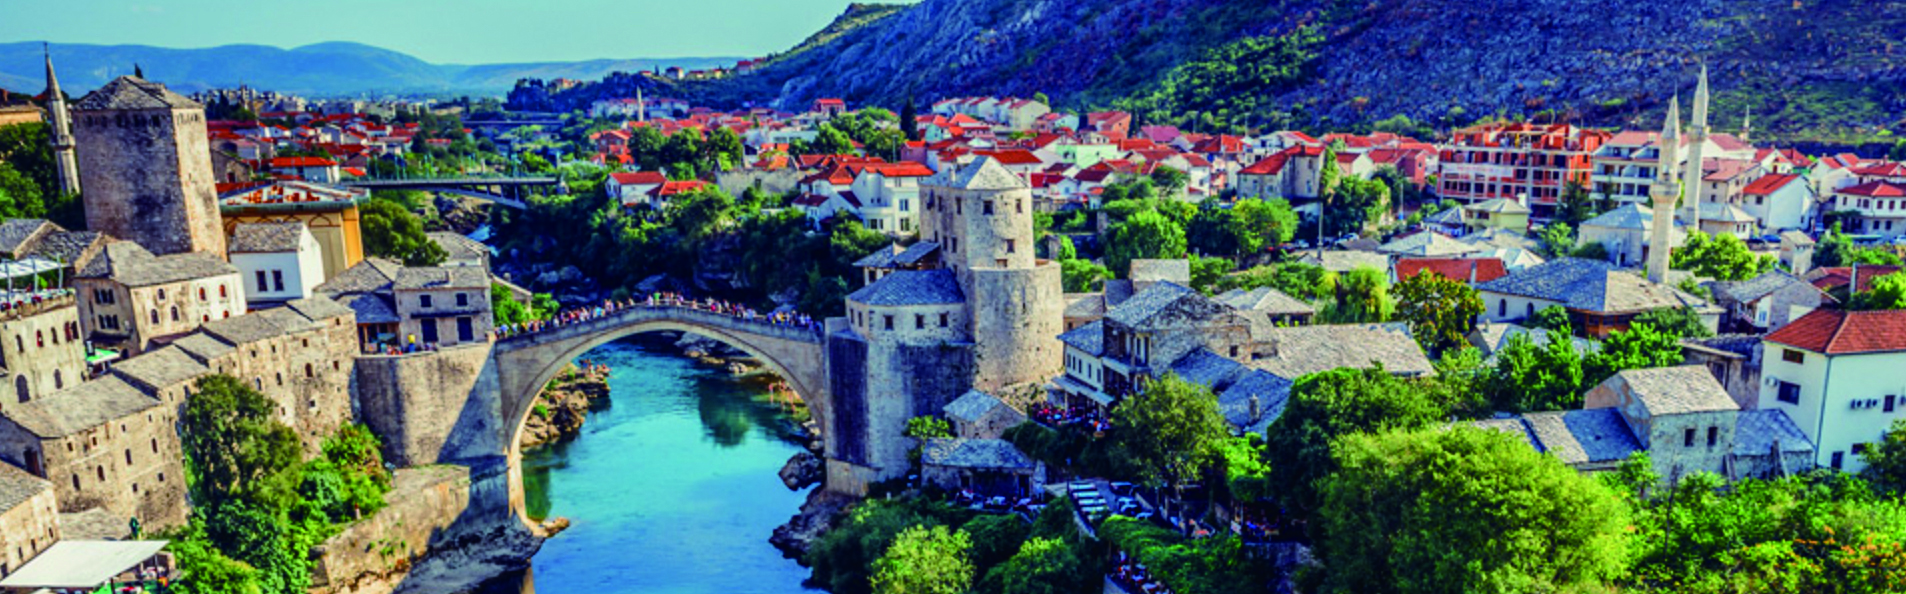 理想旅遊 品味亞得里亞海珍珠 克、斯、波赫12日  巴爾幹半島心感受 一次玩三國 18.6萬元起